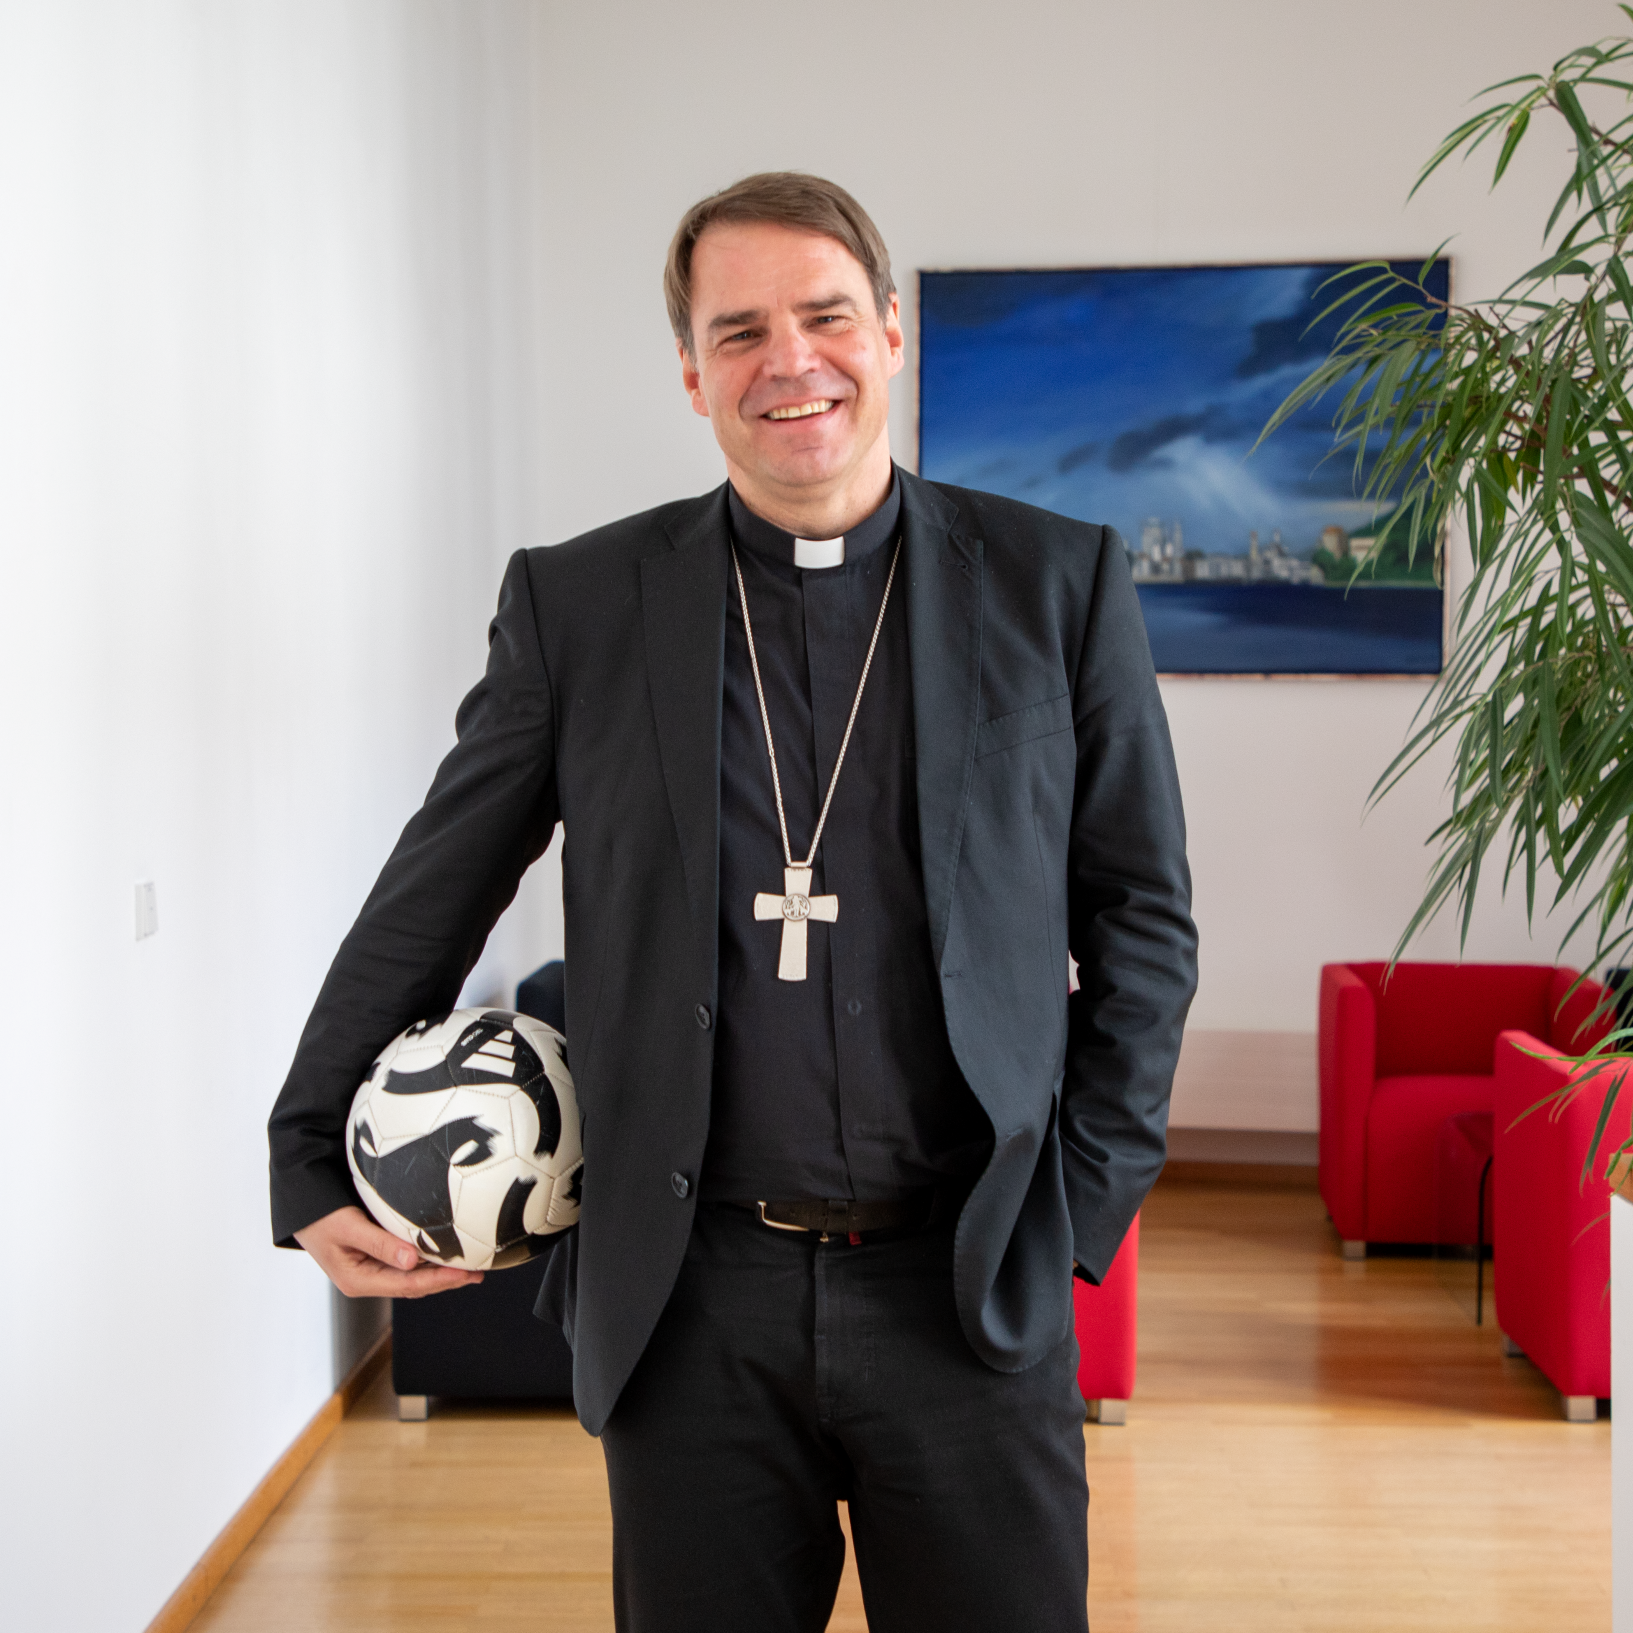 Bild des Sportbischofs der DBK, Bischof Stefan Oster, mit Fußball unterm Arm